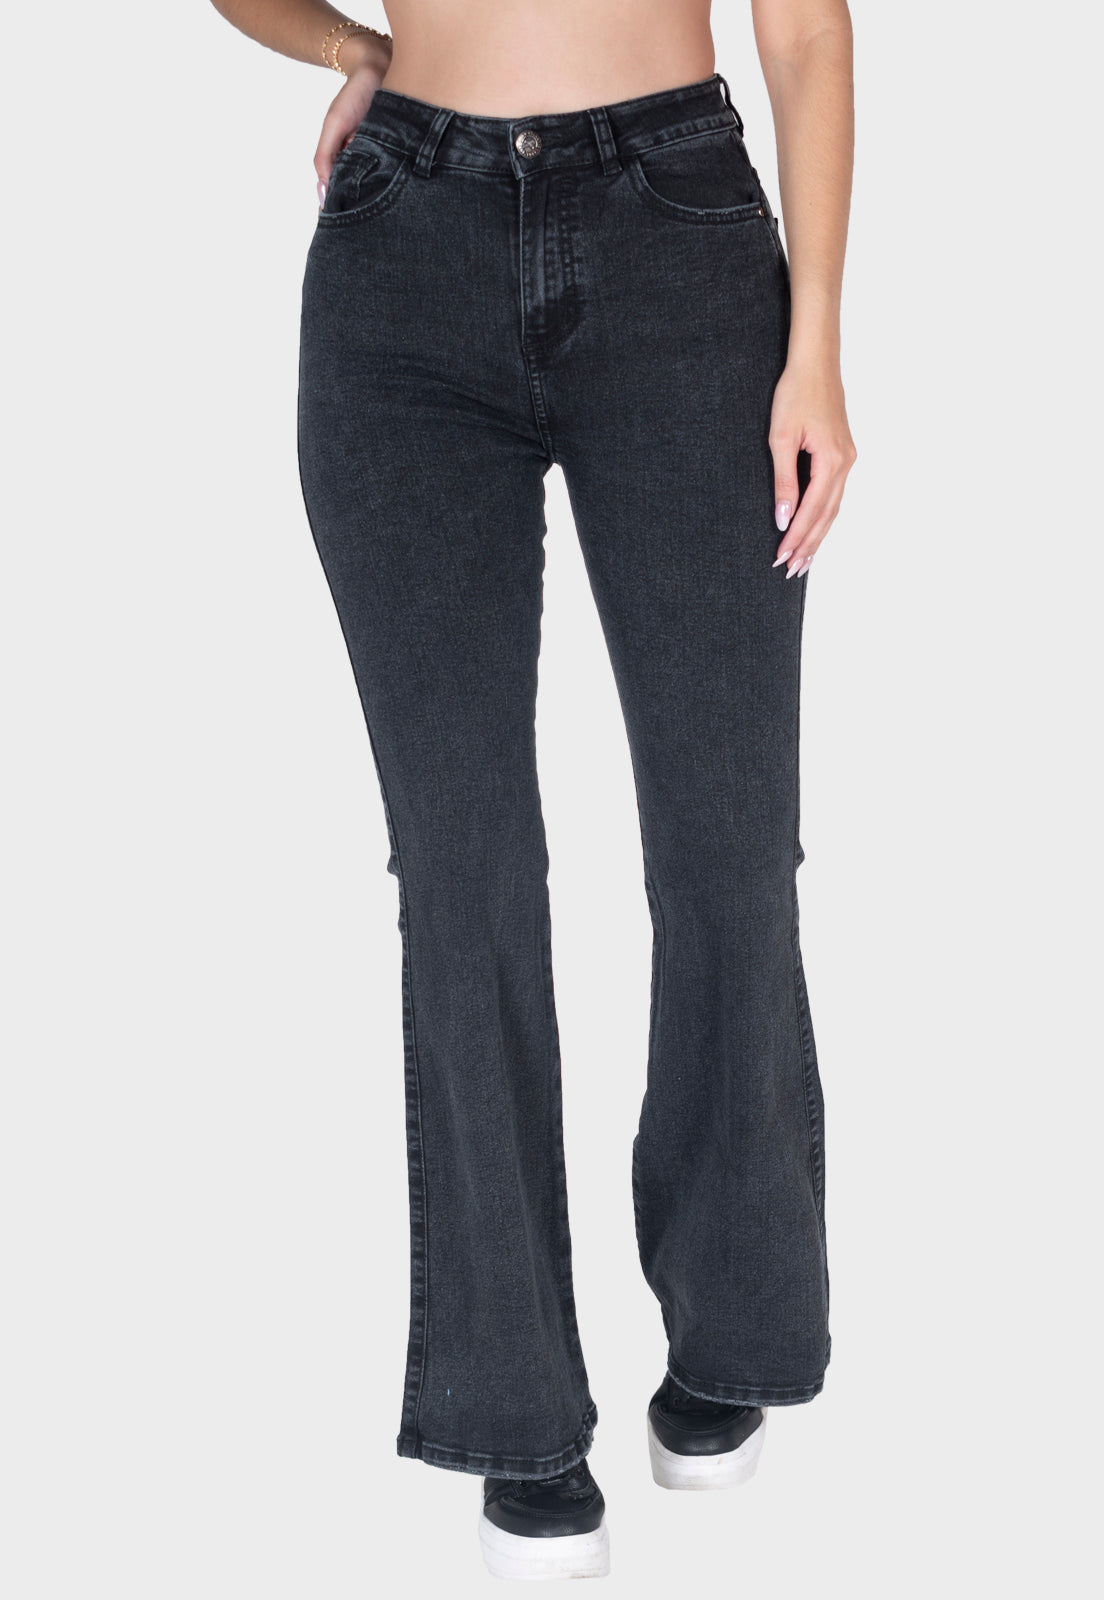 Pantalón jean semiflare negro para mujer